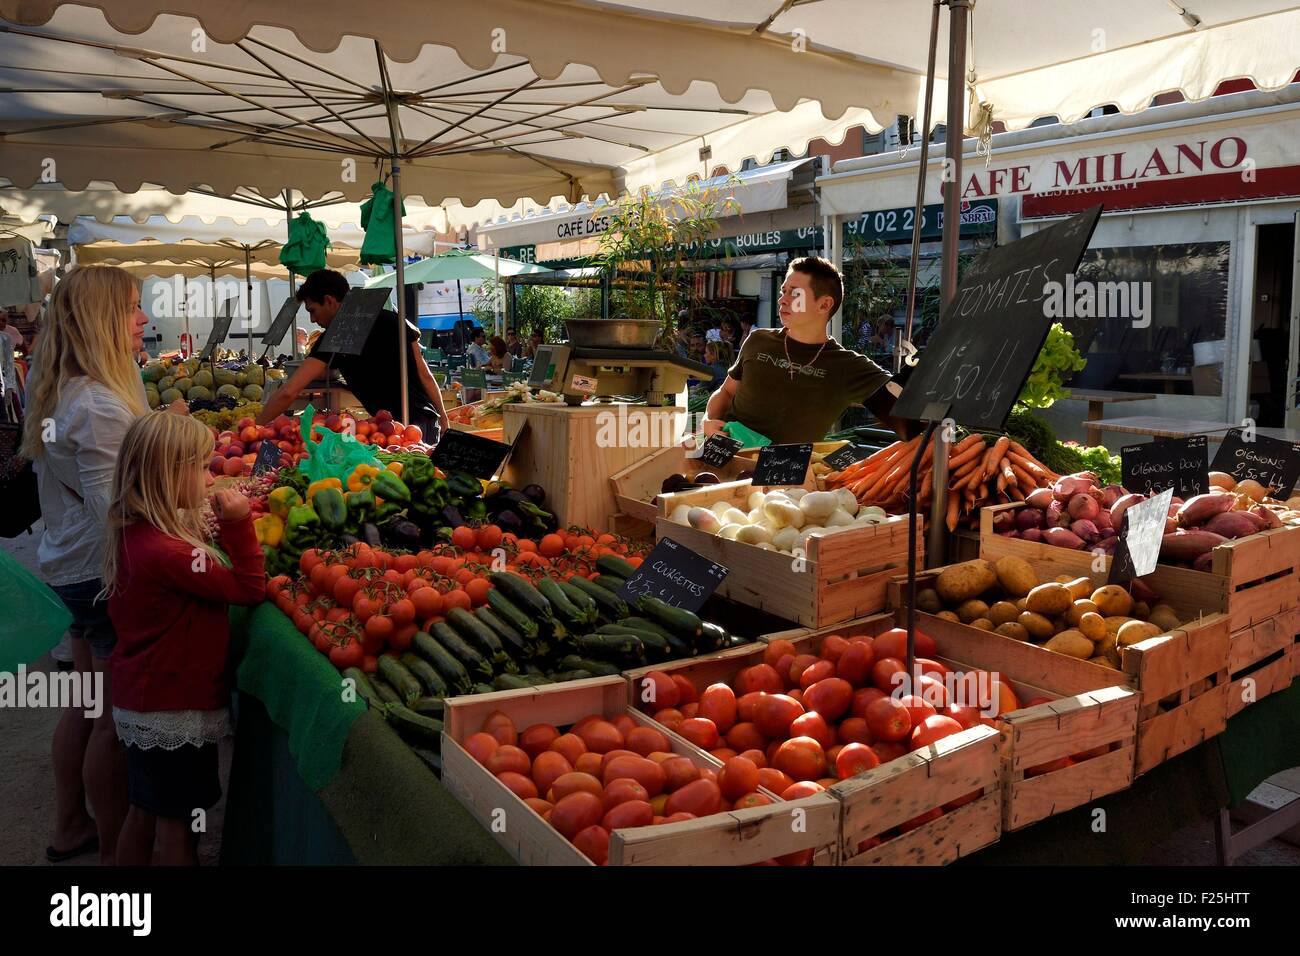 La France, Var, Saint-Tropez, Place des Lices, cabine de fruits et légumes, chaque mardi et samedi matin, ce marché offre des produits locaux Banque D'Images